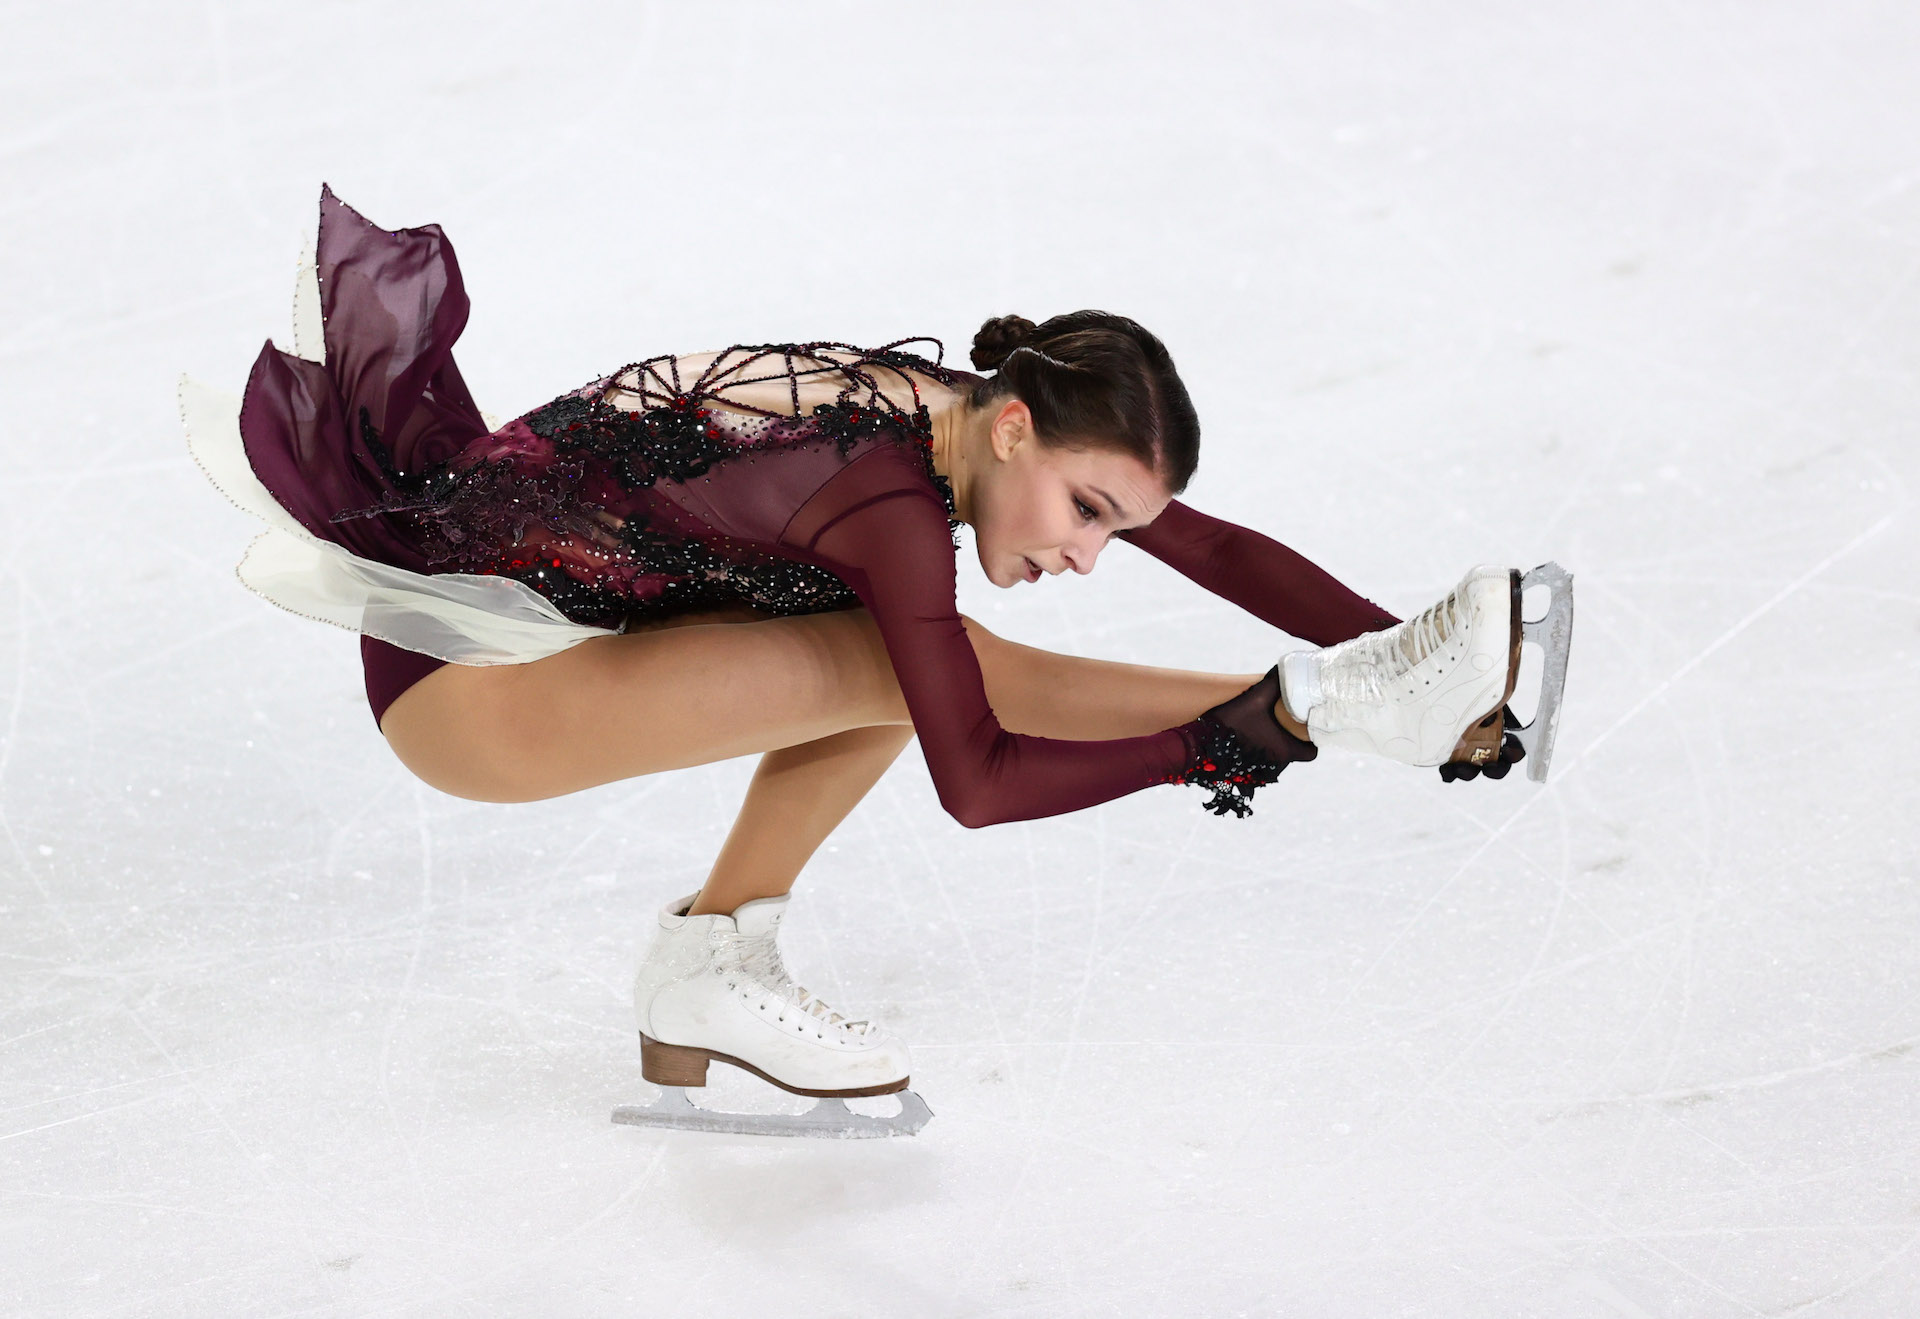 北京冬奥花样滑冰女单短节目，俄罗斯奥运队选手瓦利耶娃晋级